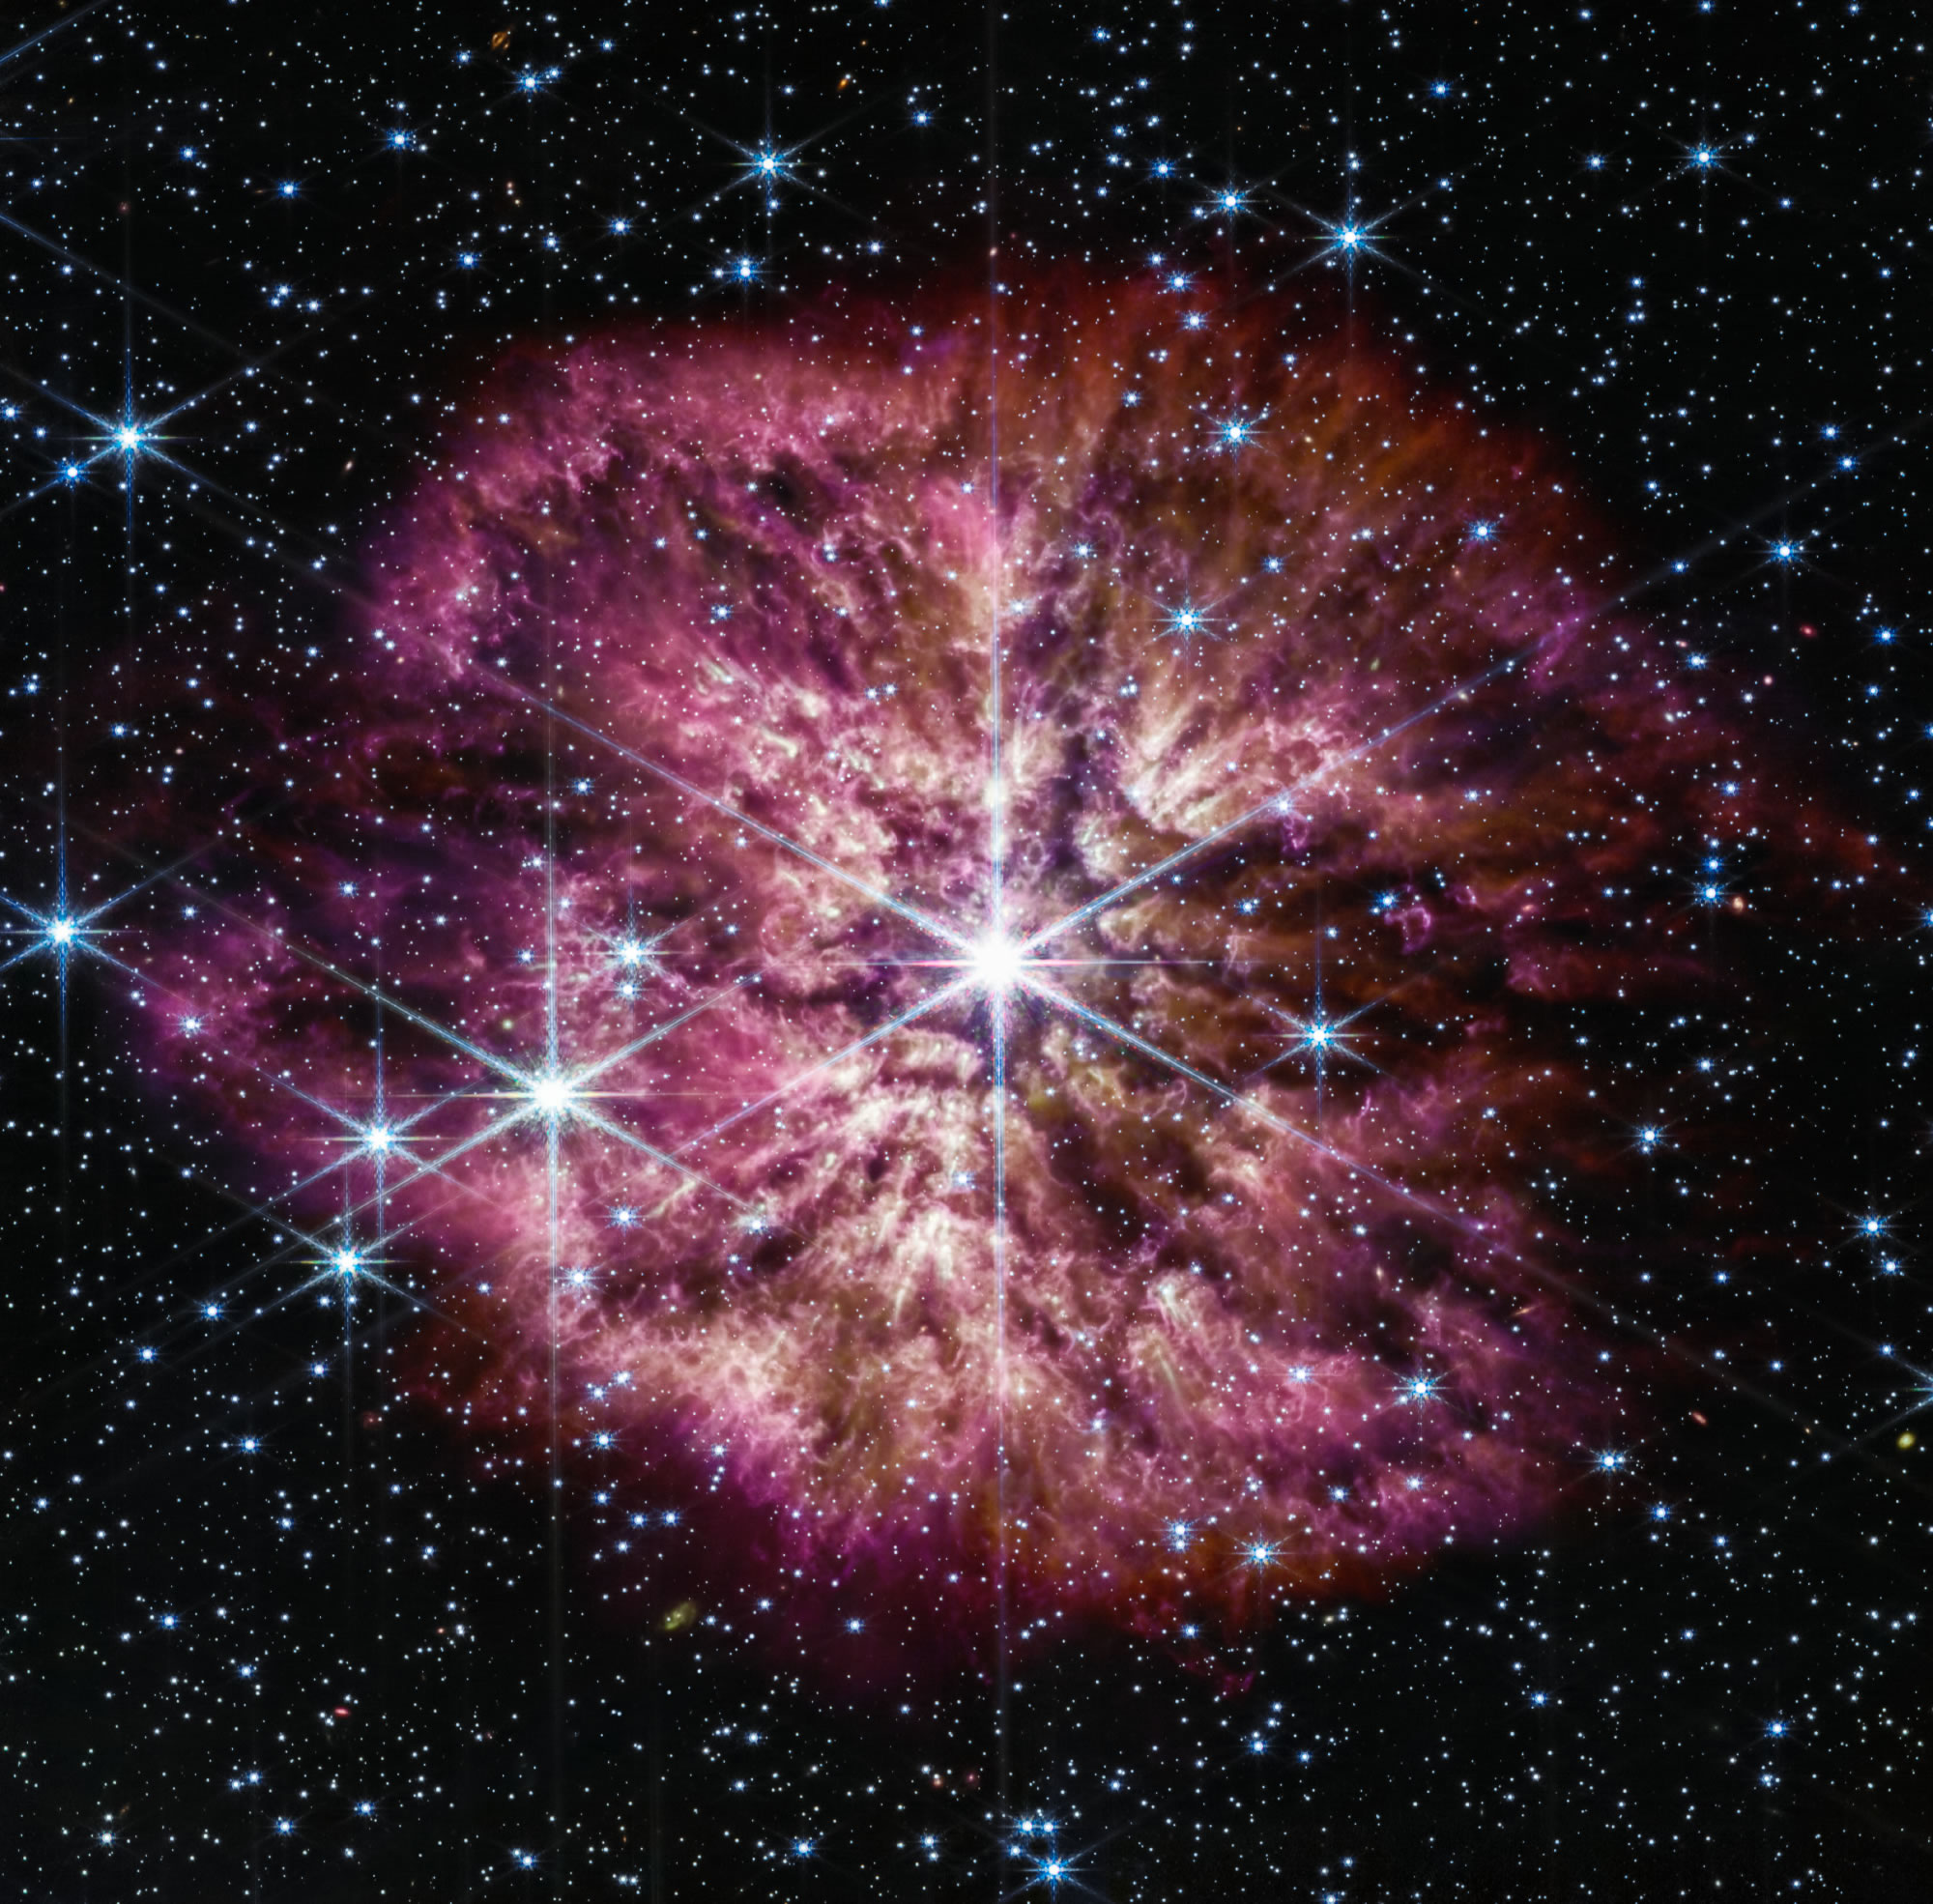 美国宇航局詹姆斯·韦伯太空望远镜捕捉到罕见的超新星前奏——人马座WR 124恒星